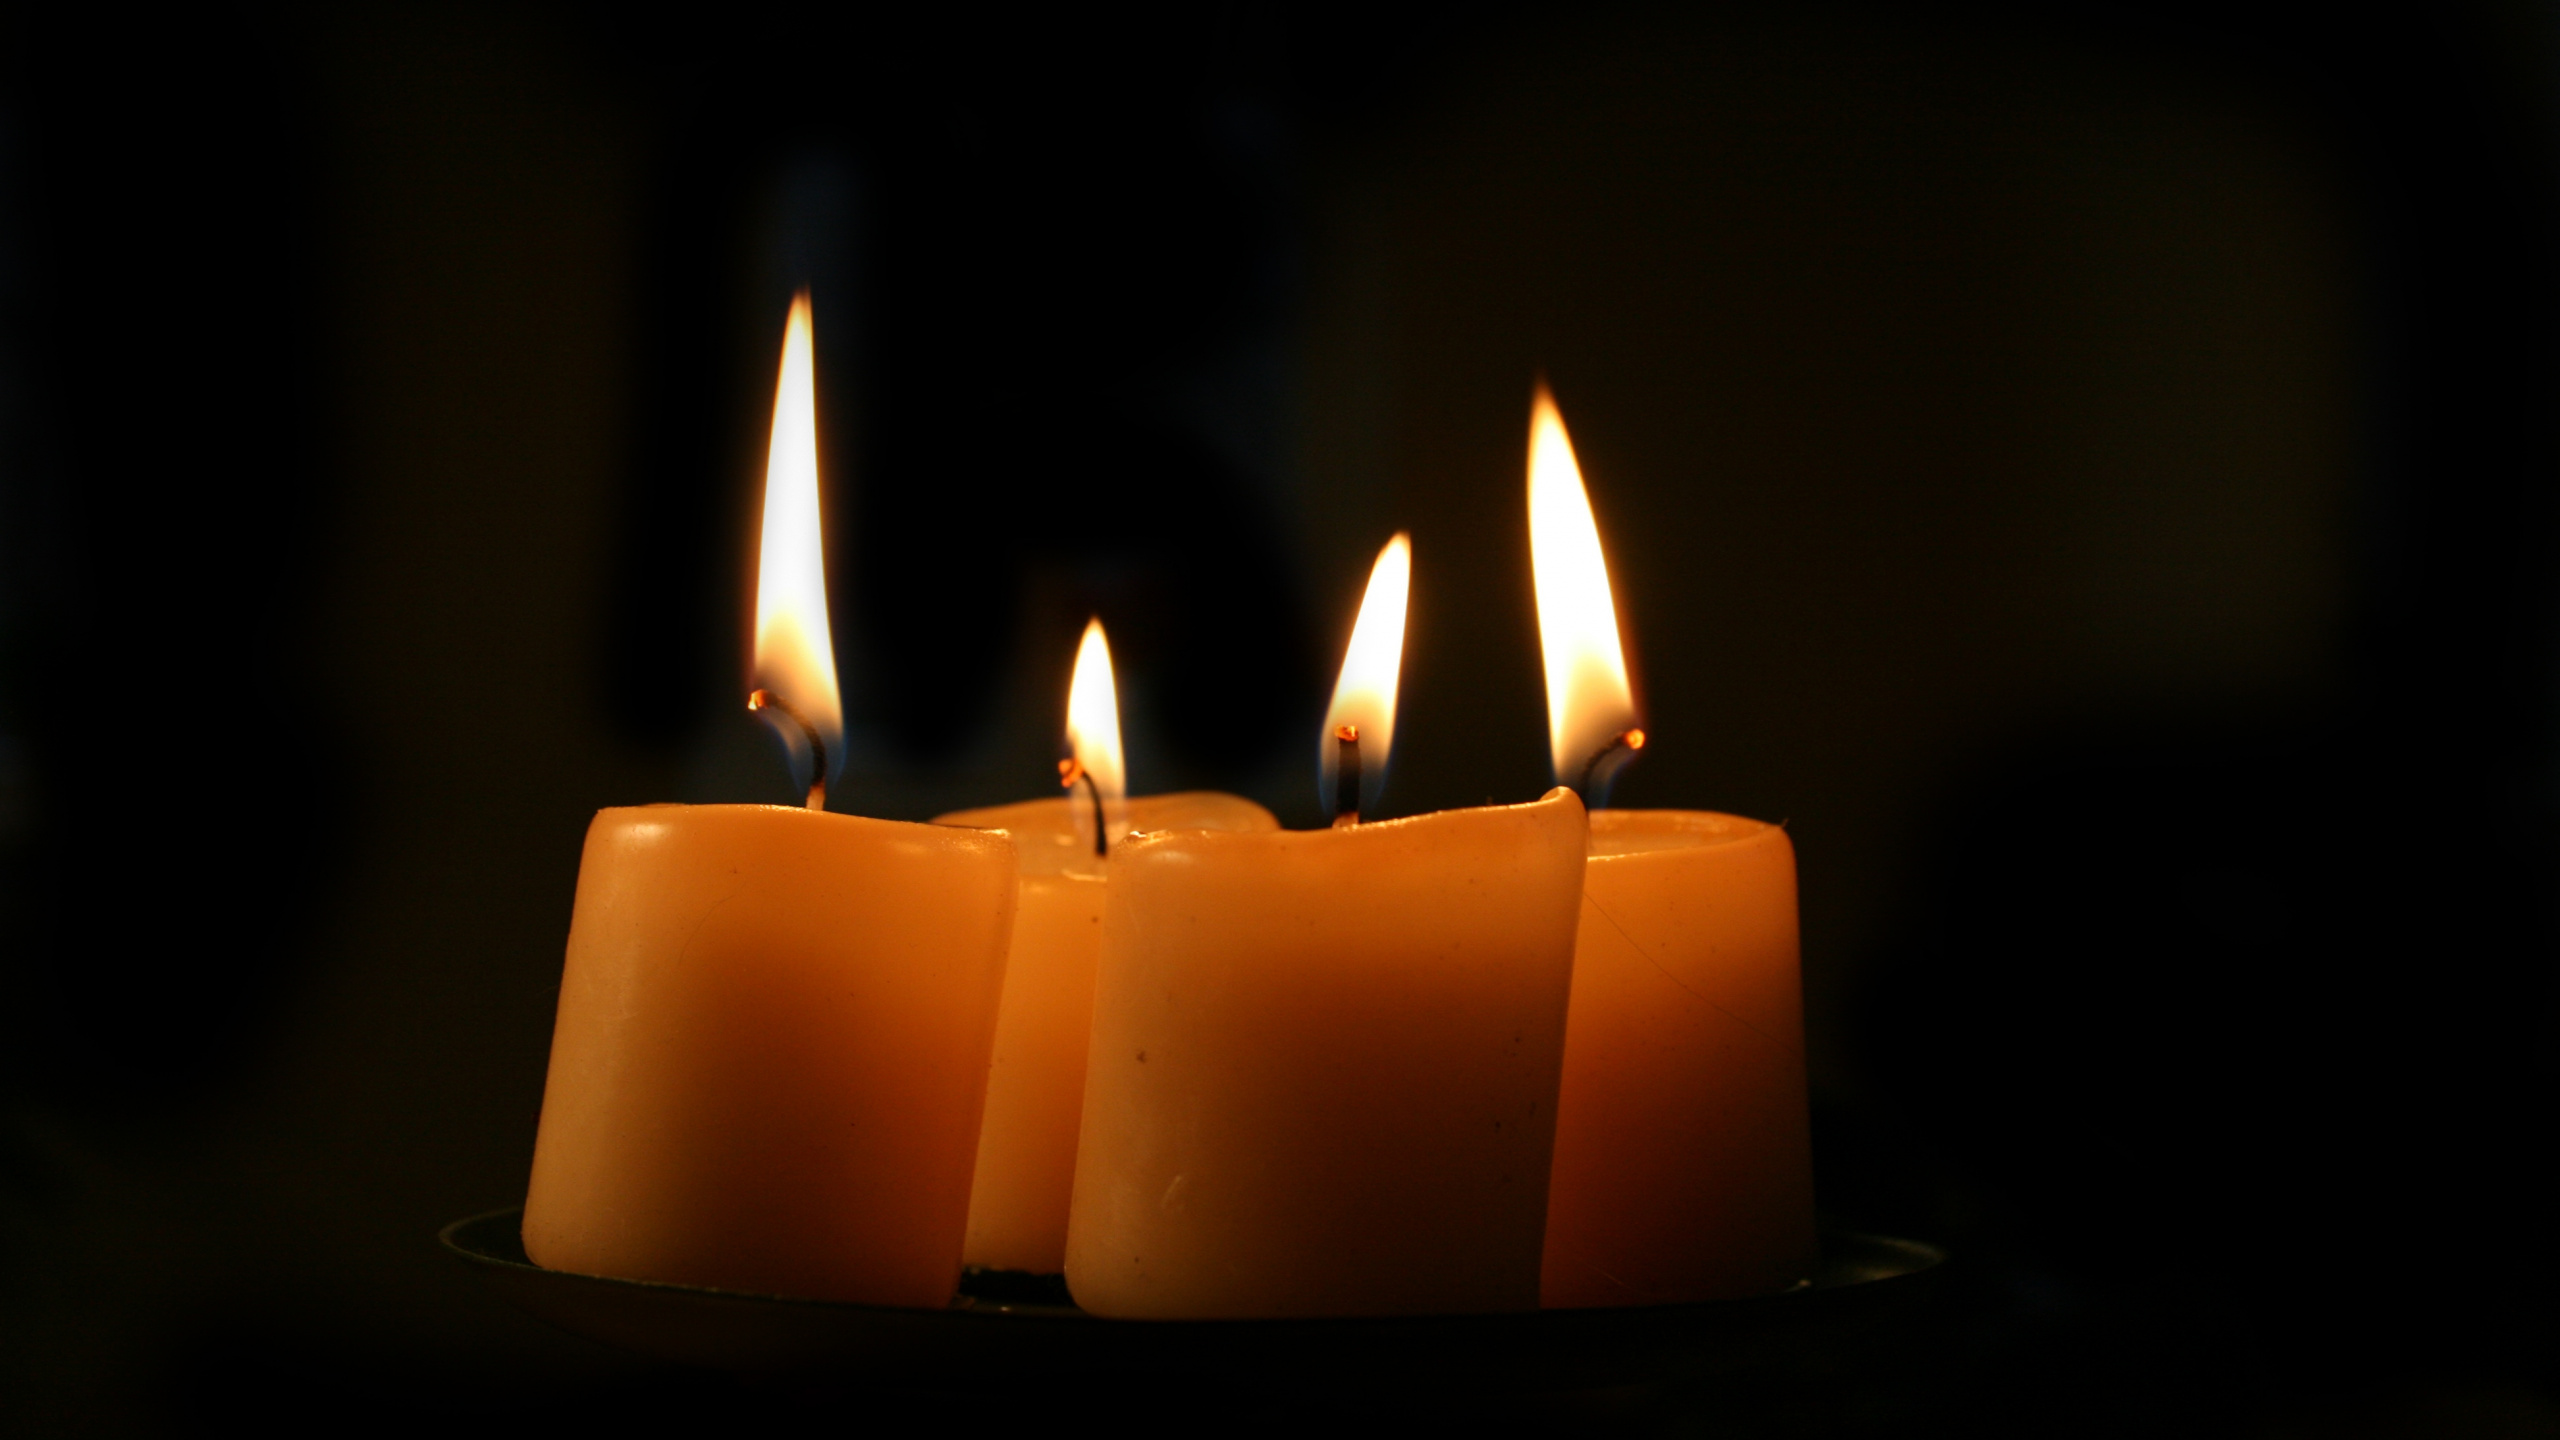 3 Brennende Kerzen Auf Schwarzem Hintergrund. Wallpaper in 2560x1440 Resolution